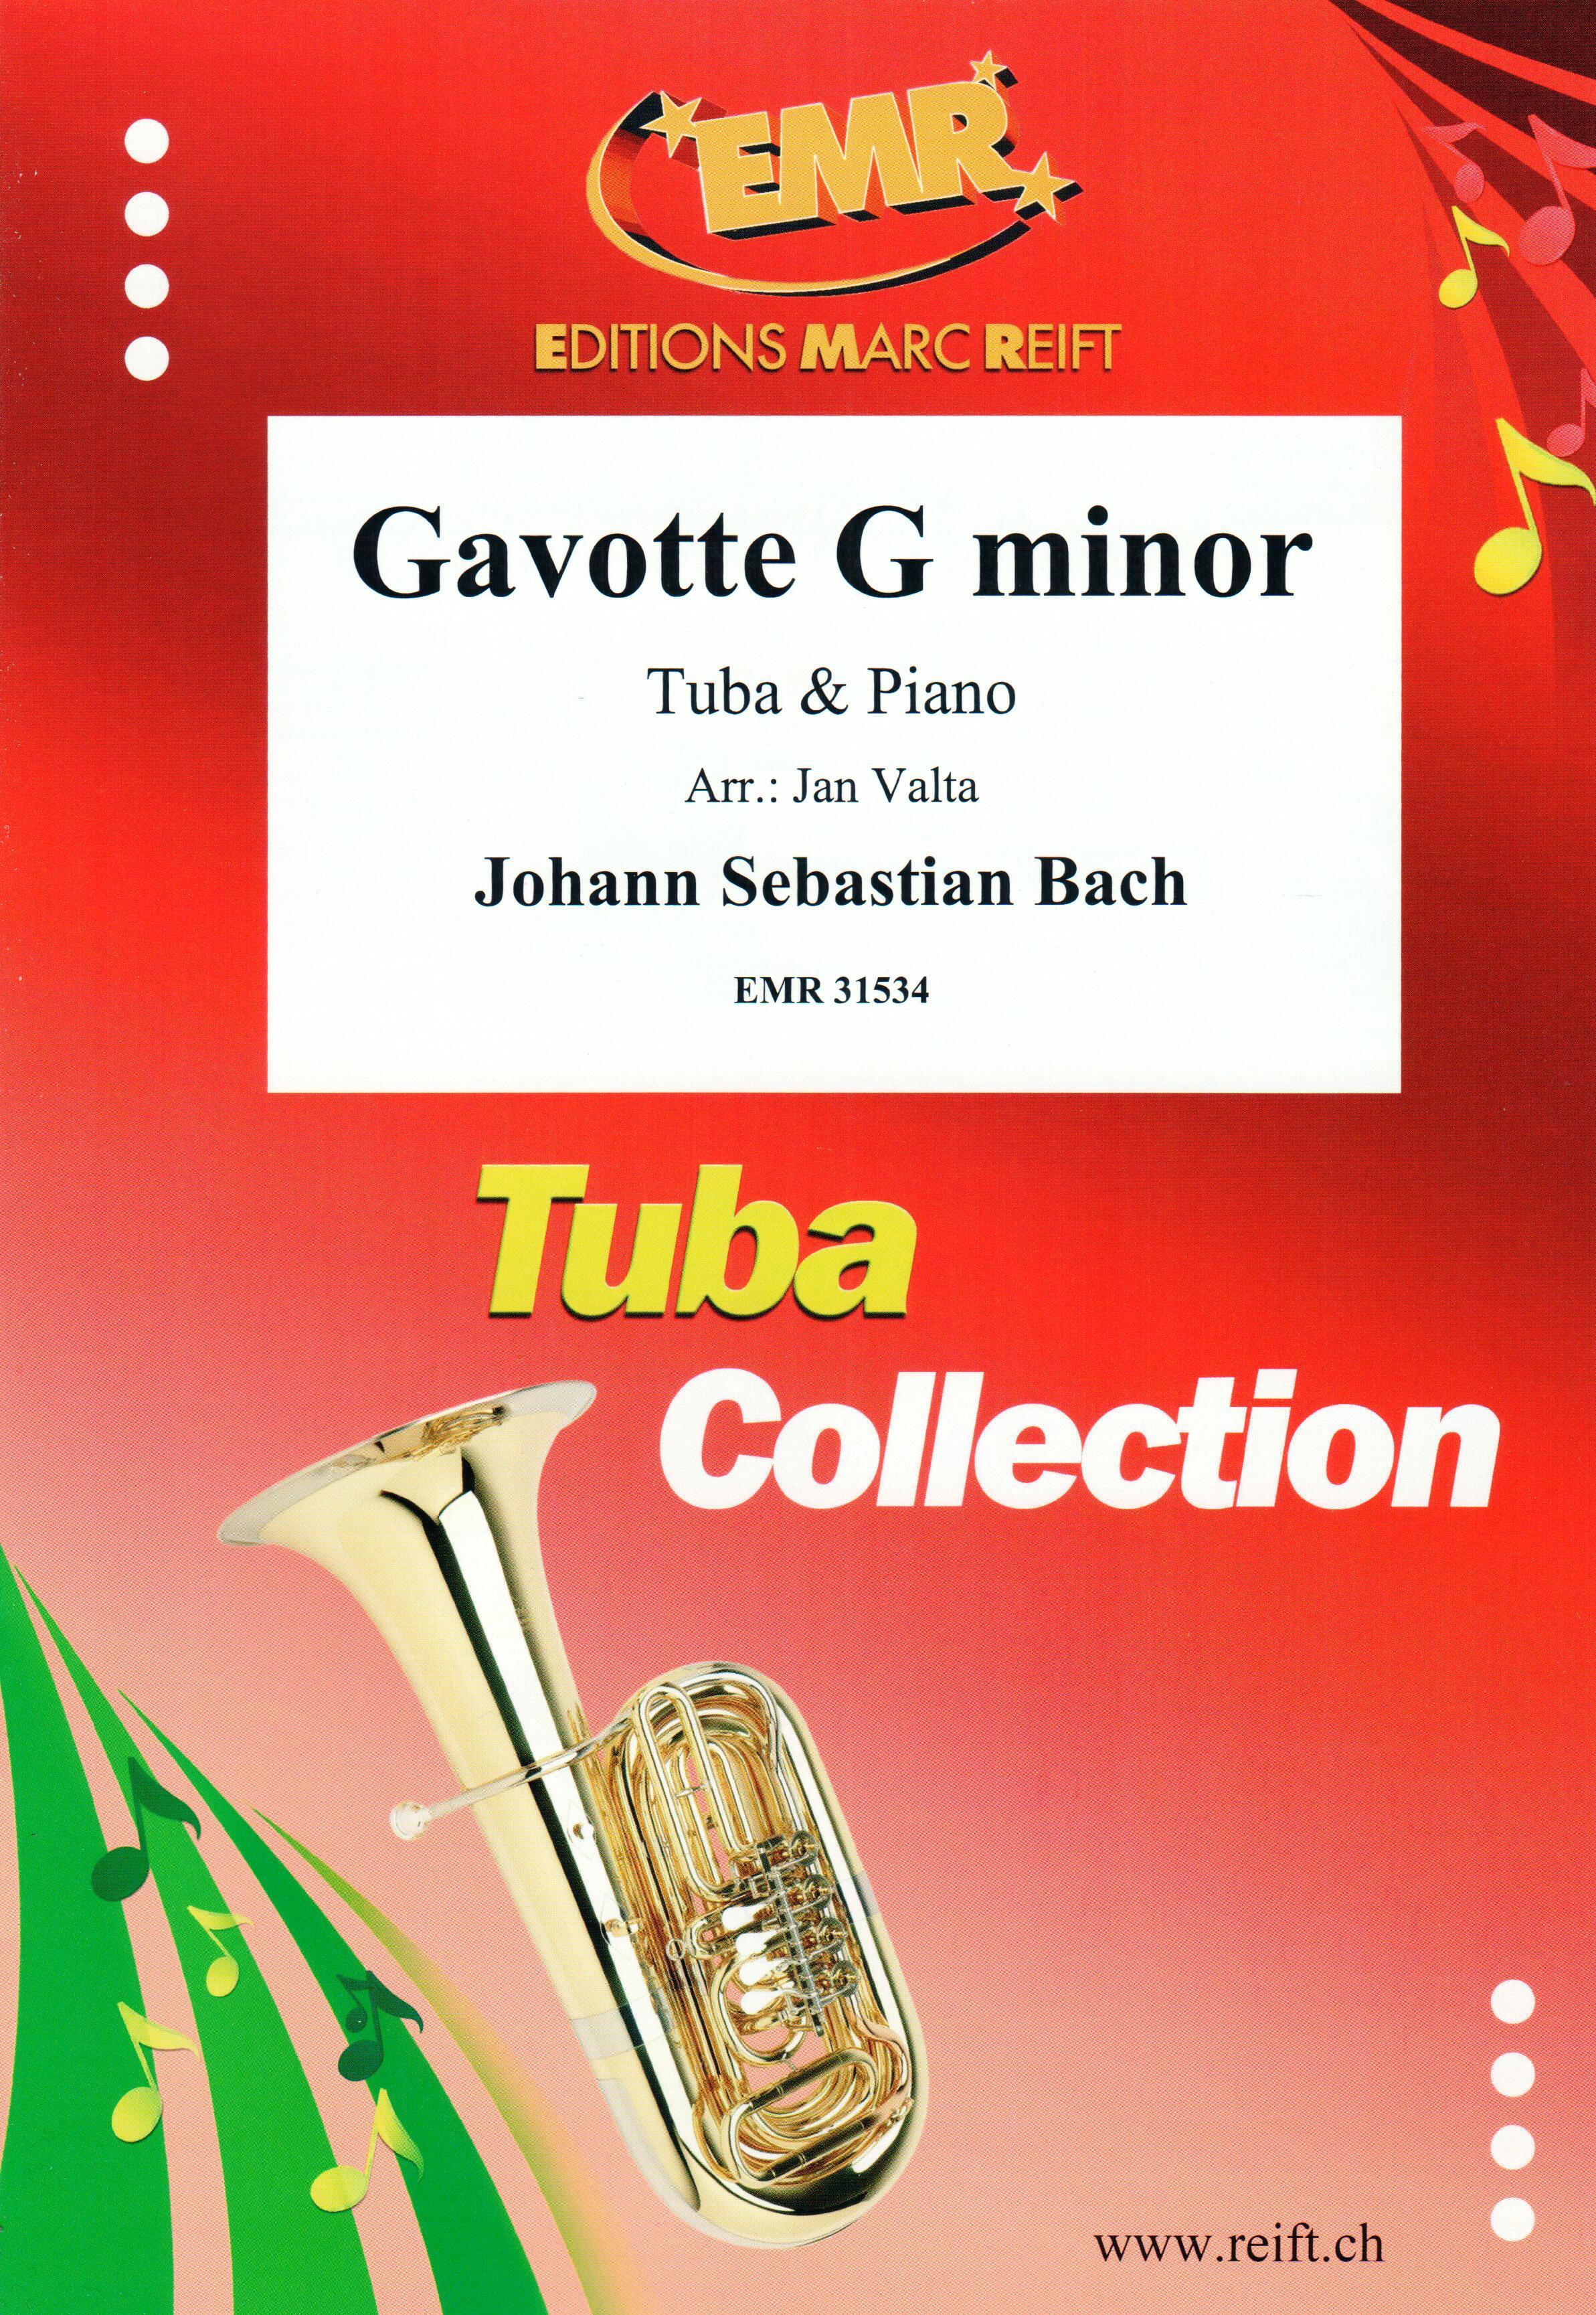 GAVOTTE G MINOR, SOLOS - E♭. Bass